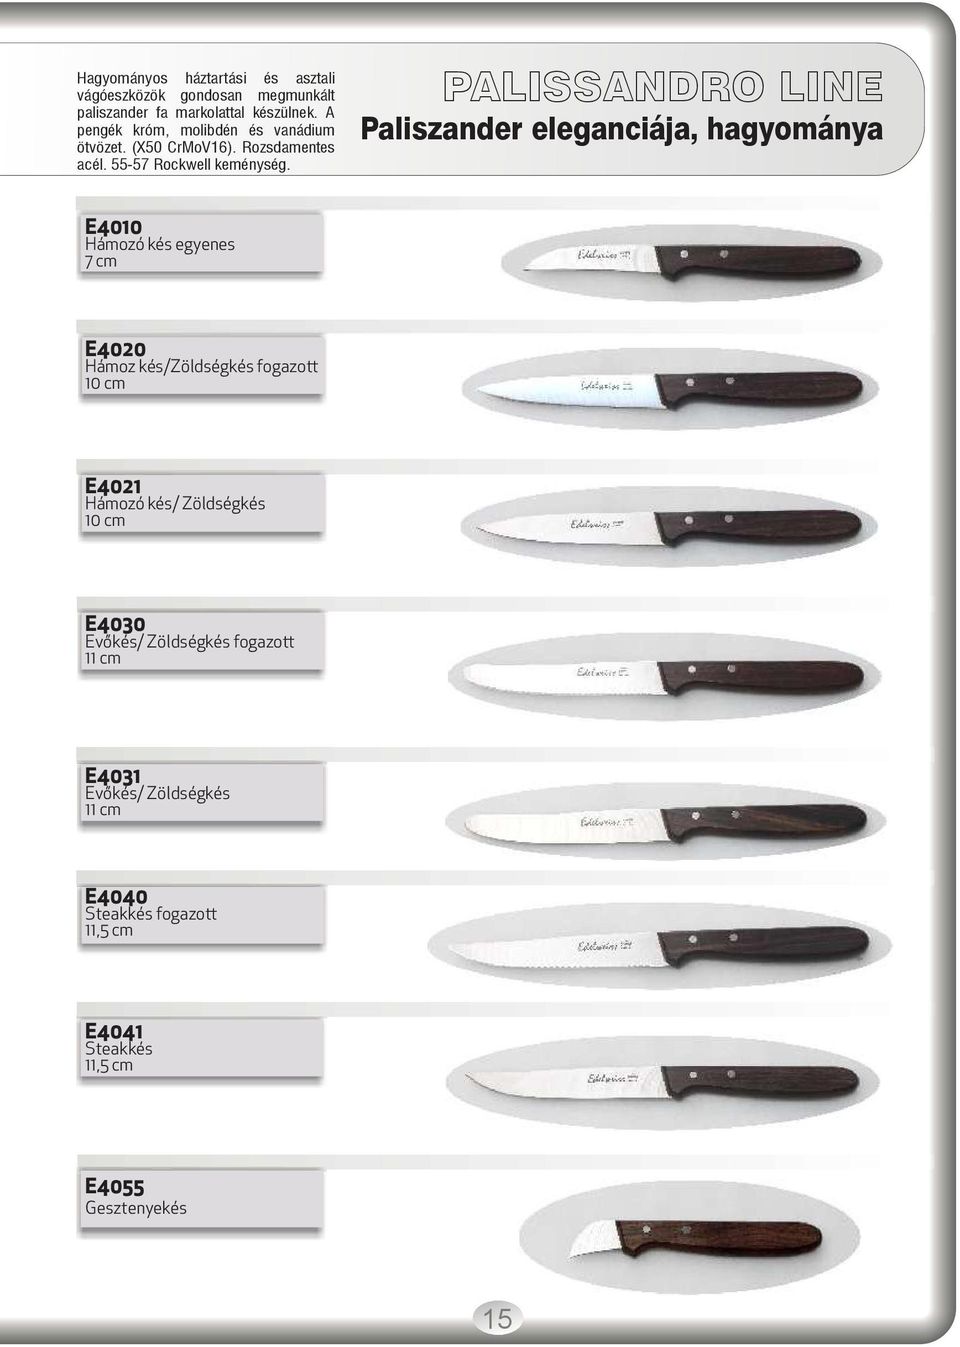 PALISSANDRO LINE Paliszander eleganciája, hagyománya E4010 Hámozó kés egyenes 7 cm E4020 Hámoz kés/zöldségkés fogazott 10 cm